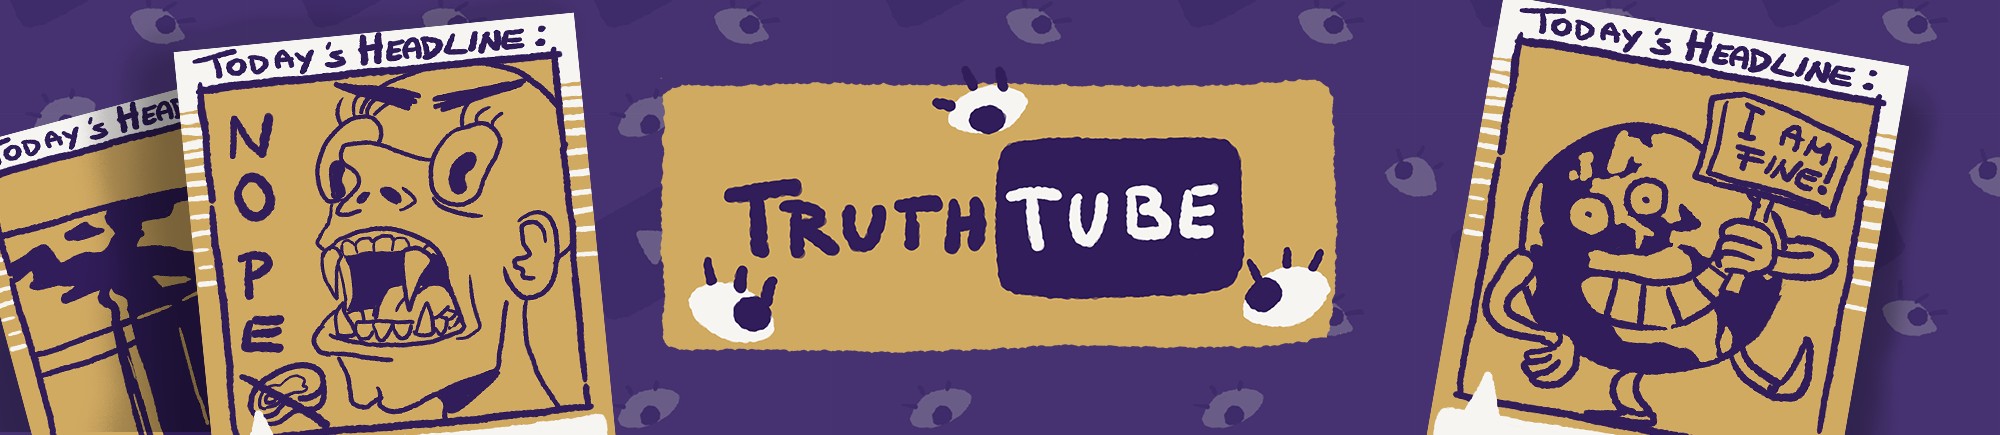 TruthTube